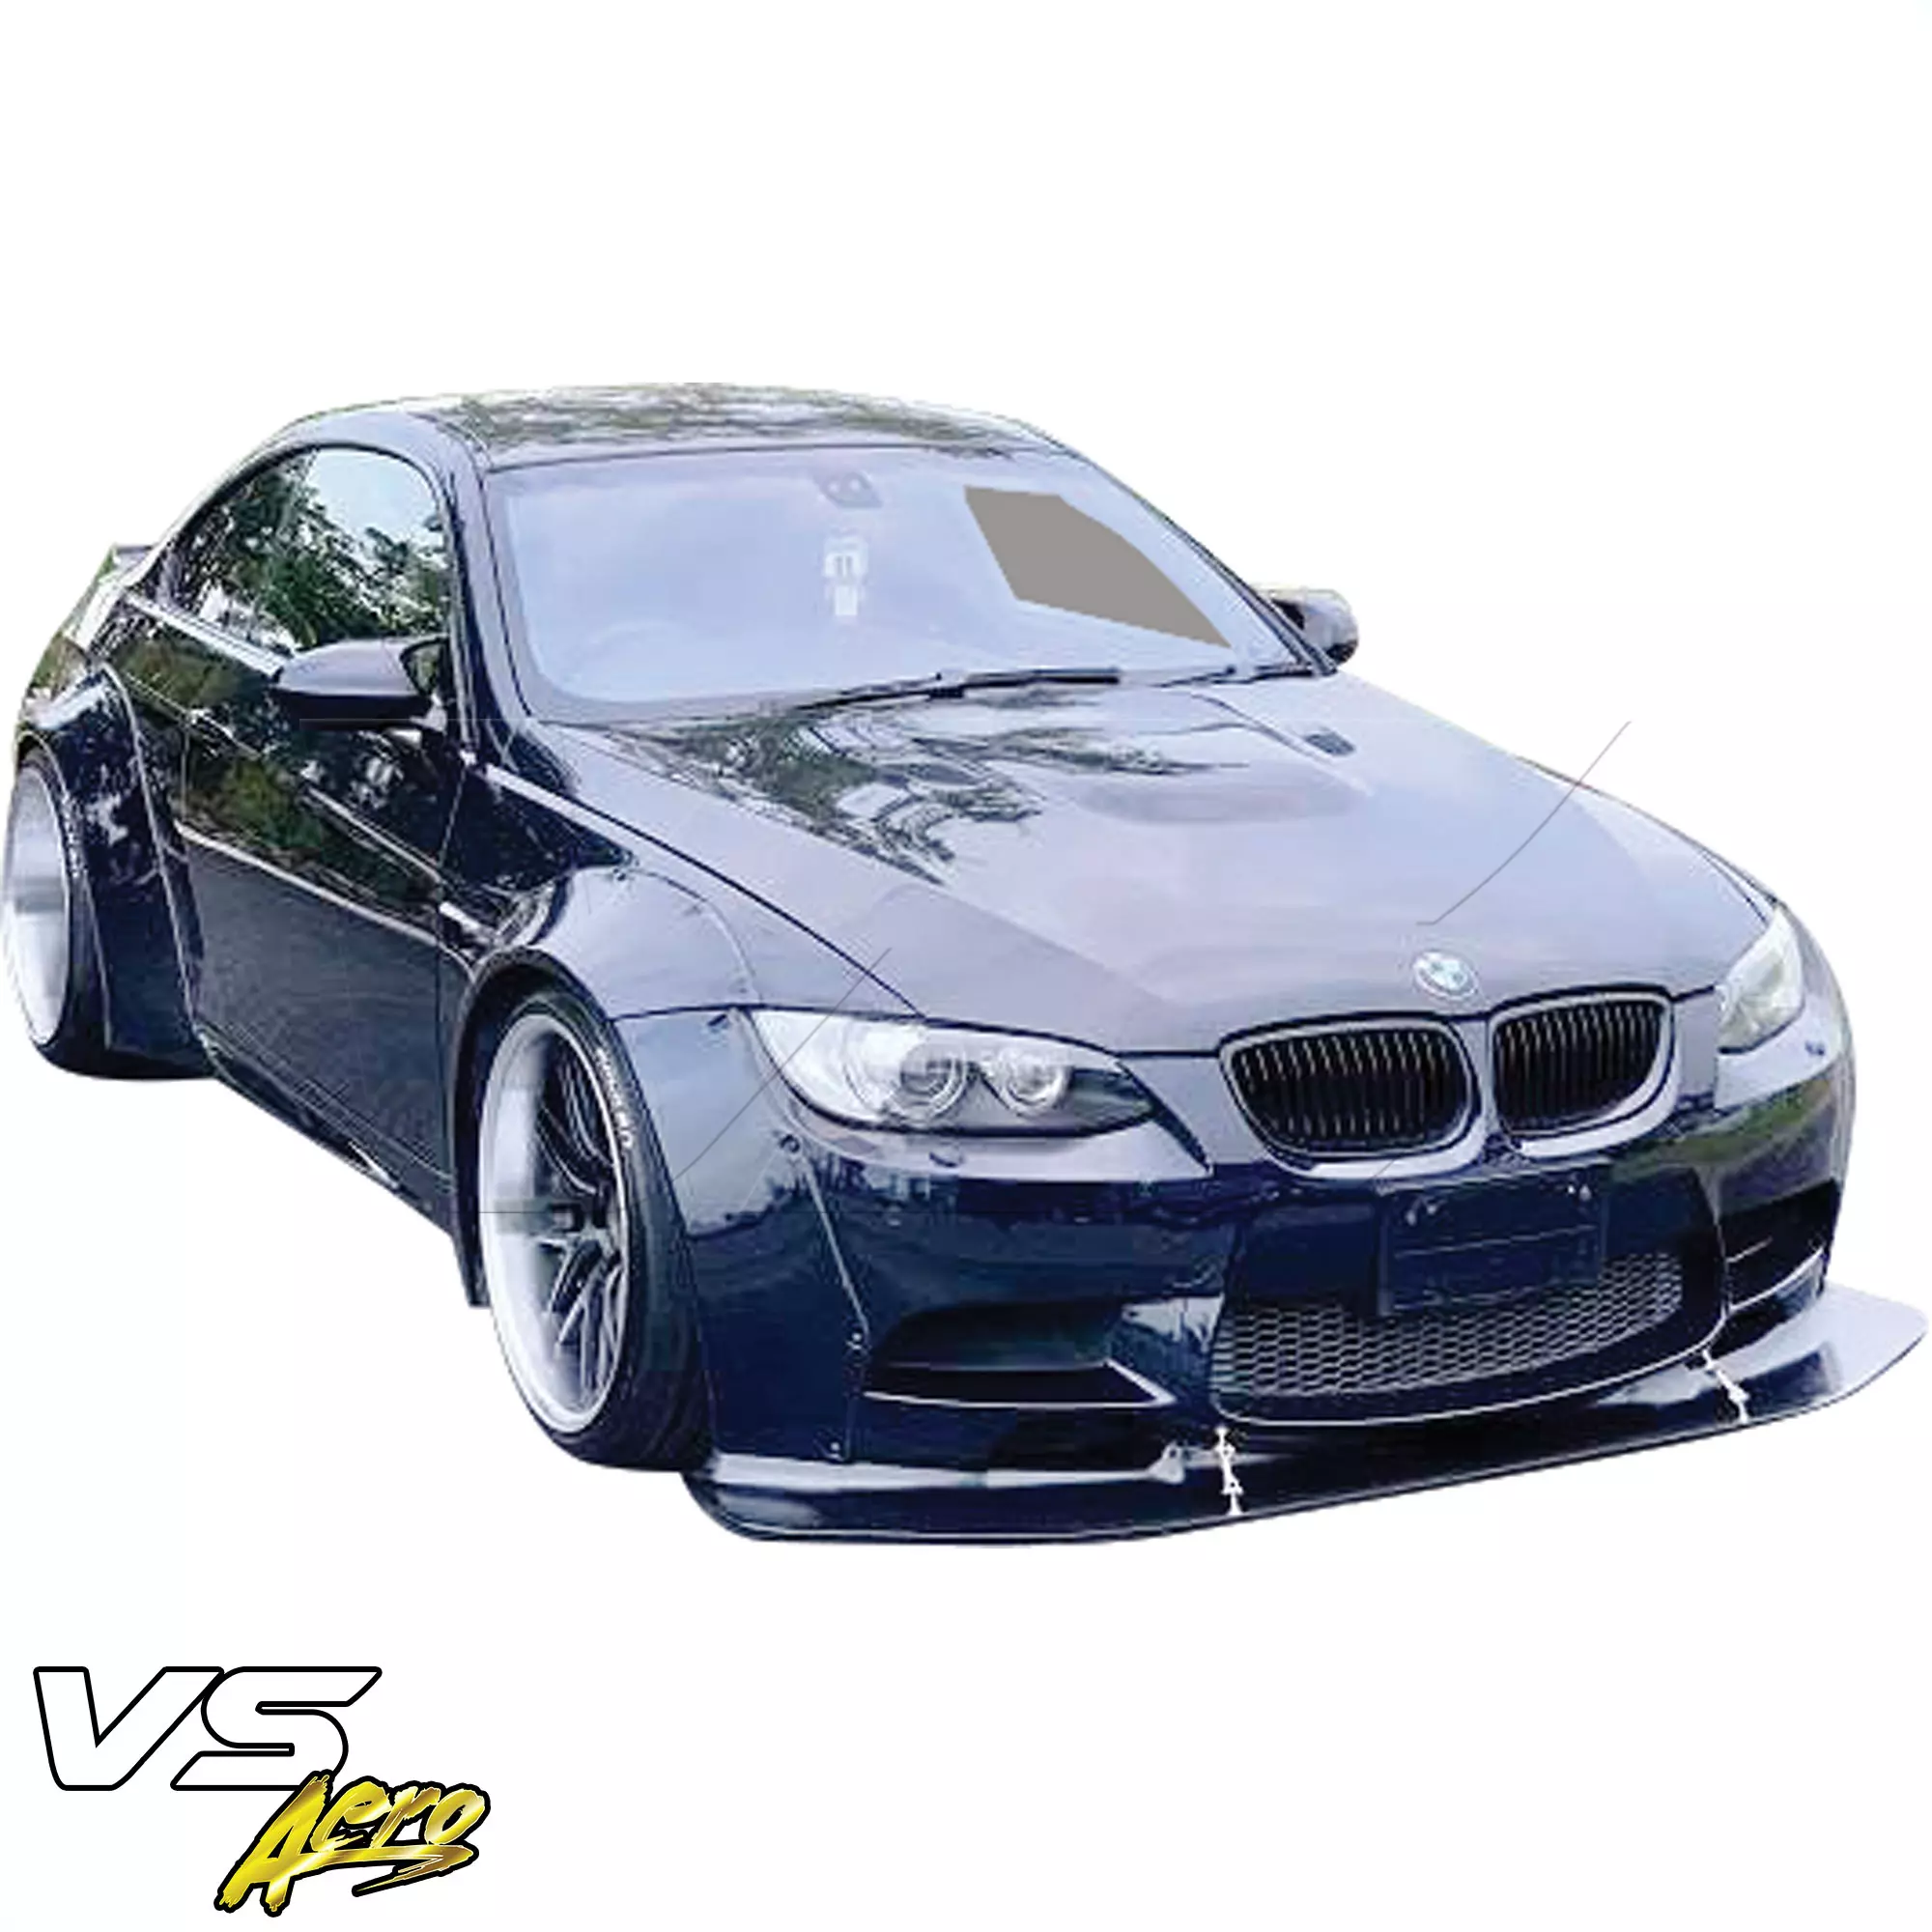 VSaero FRP LBPE Wide Body Kit > BMW M3 E92 2008-2013 > 2dr - Image 5